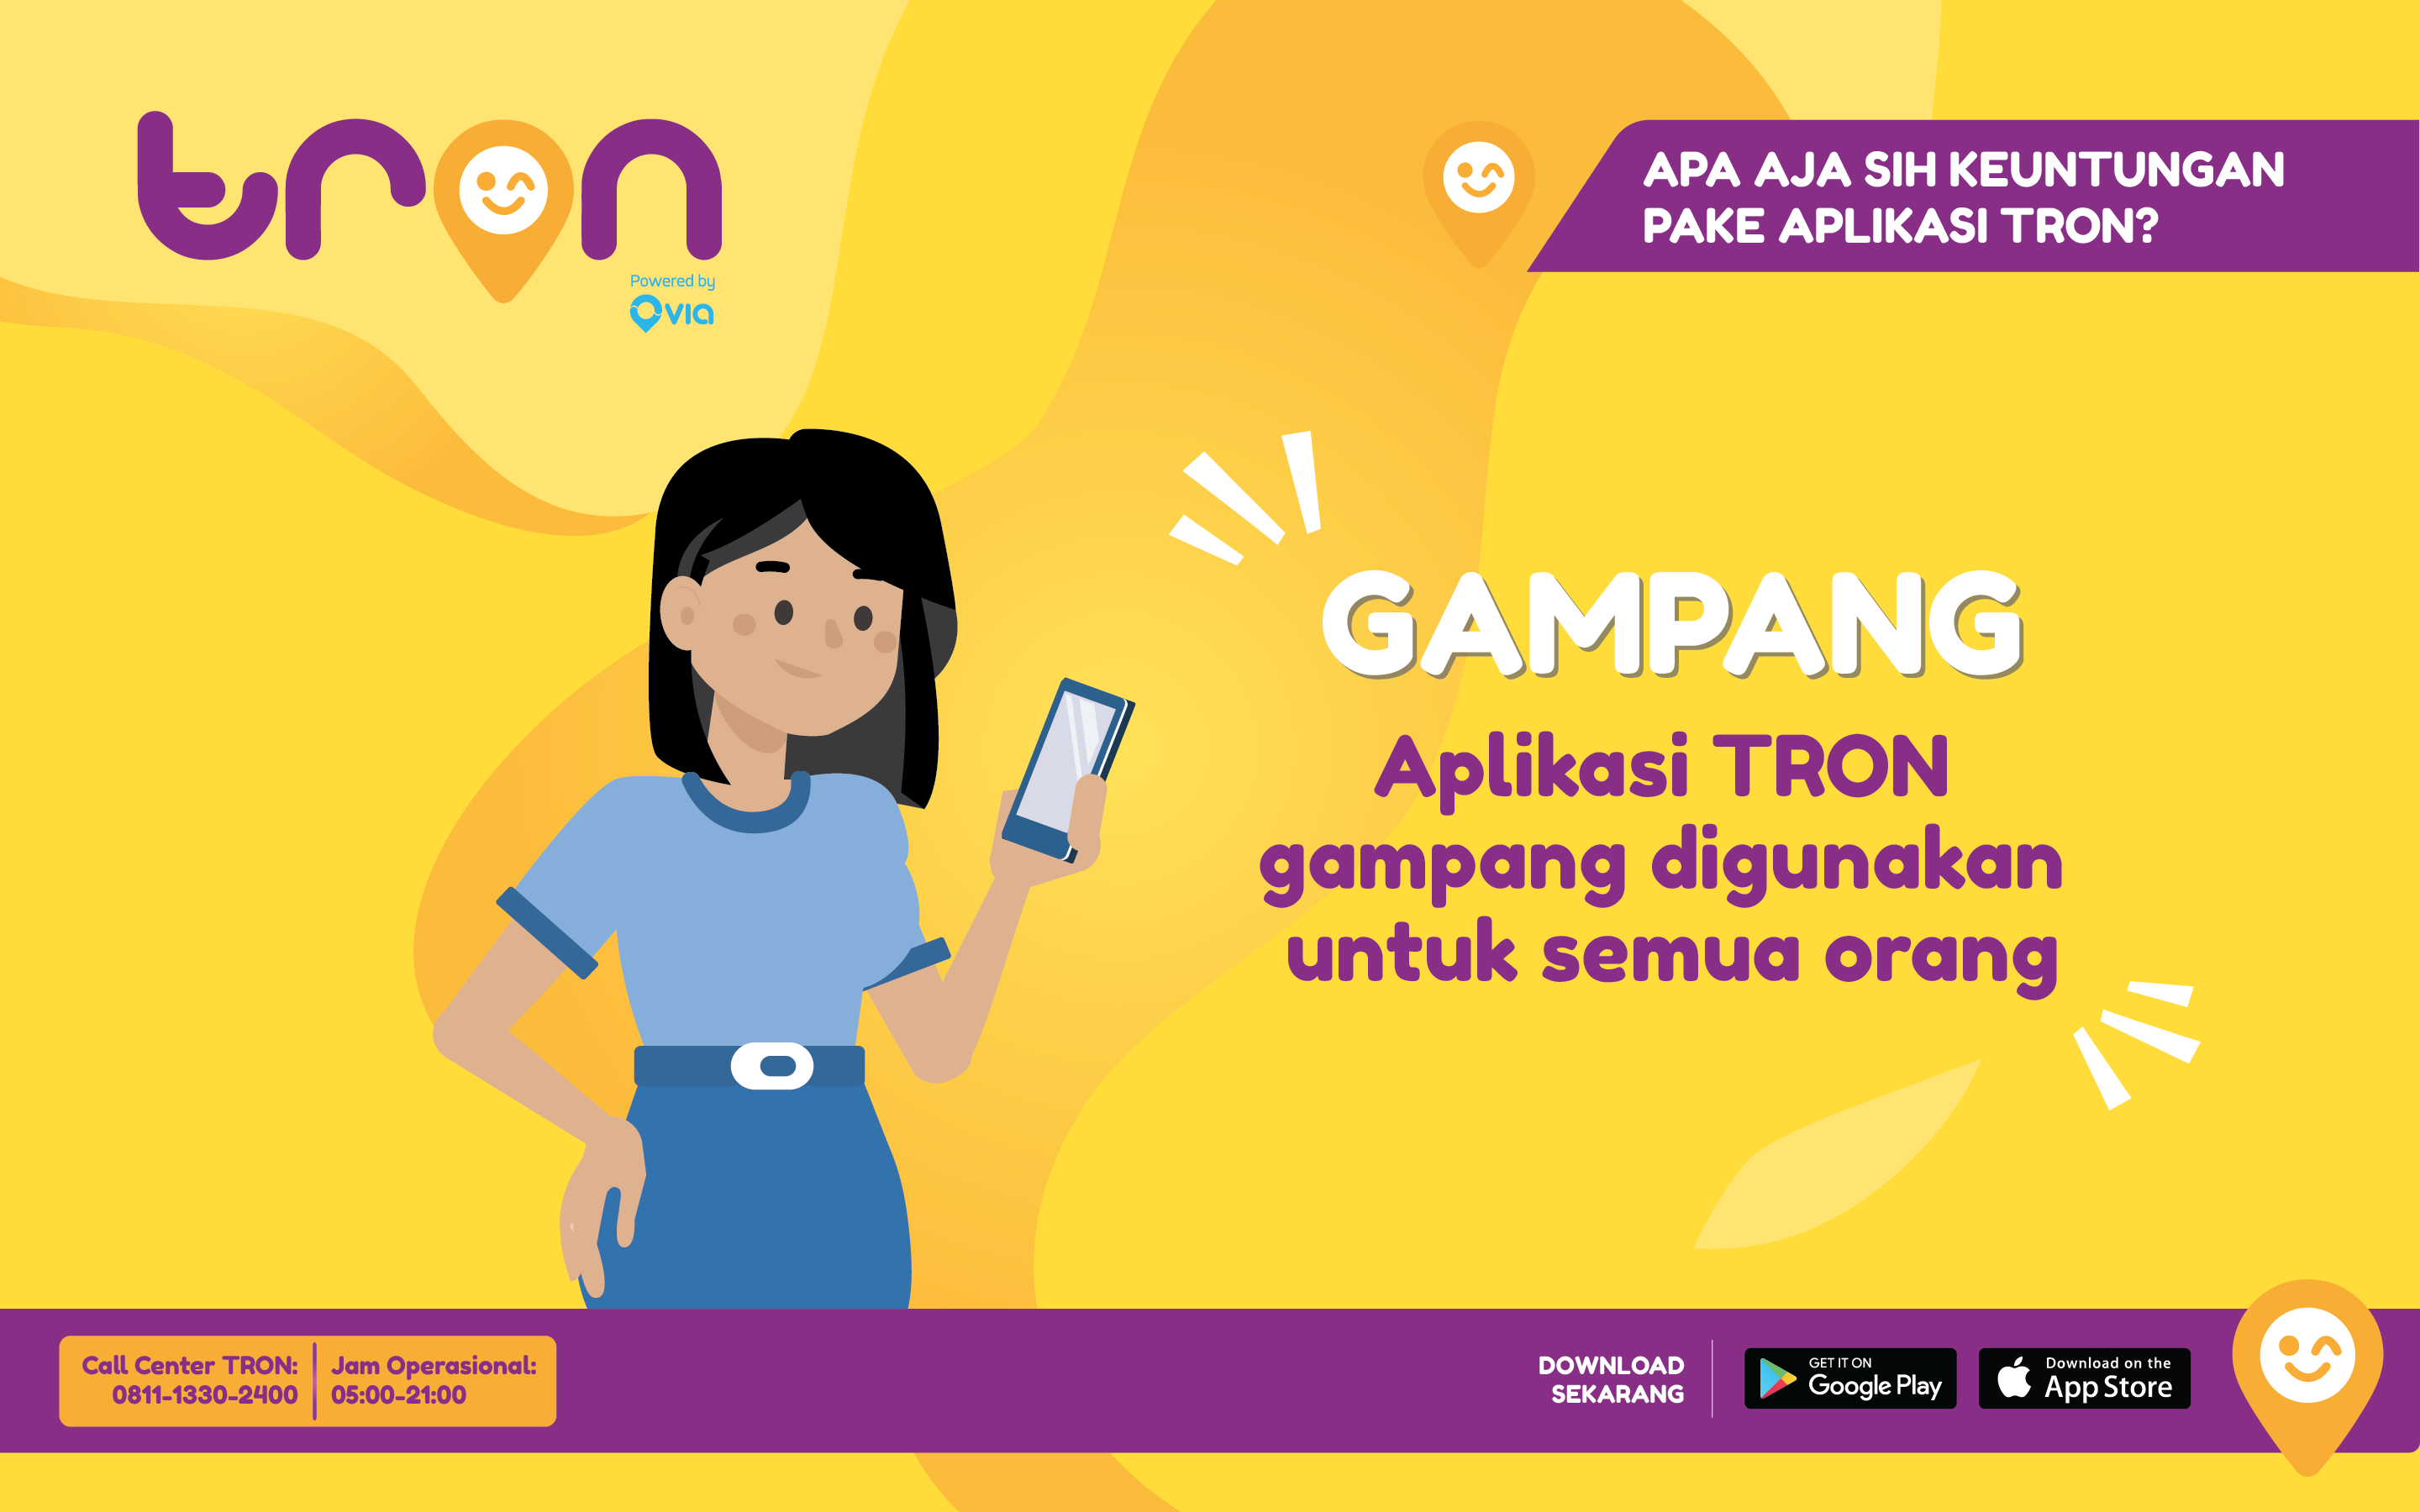 Aplikasi ride sharing khusus angkot Tron mulai hadir di Bekasi, di tahap awal mencakup 150 unit. Segera hadir di lima kota satelit tahun ini